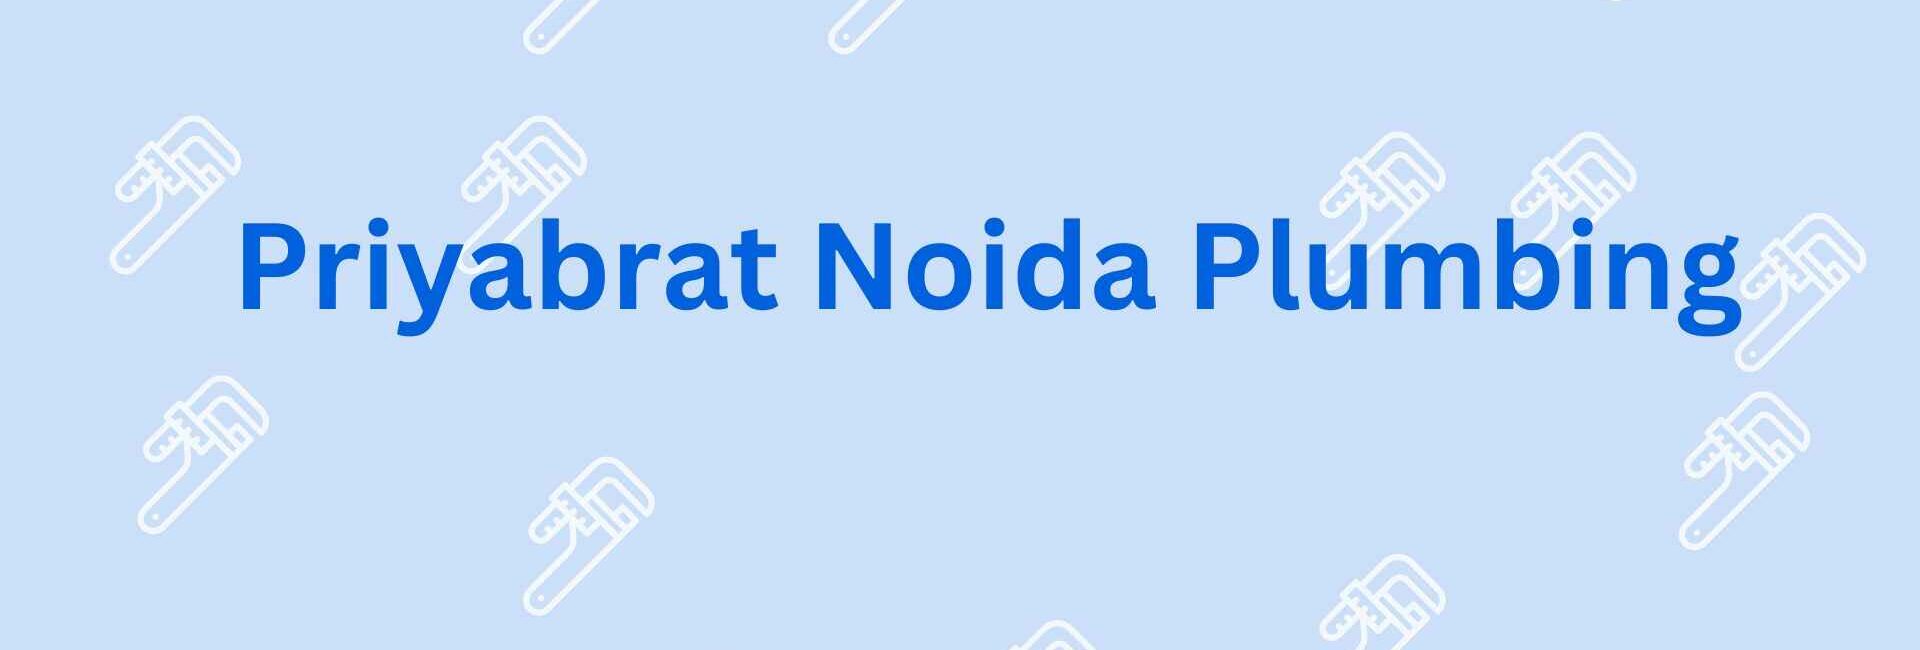 Priyabrat Noida Plumbing - Best Plumber Service Provider in Noida